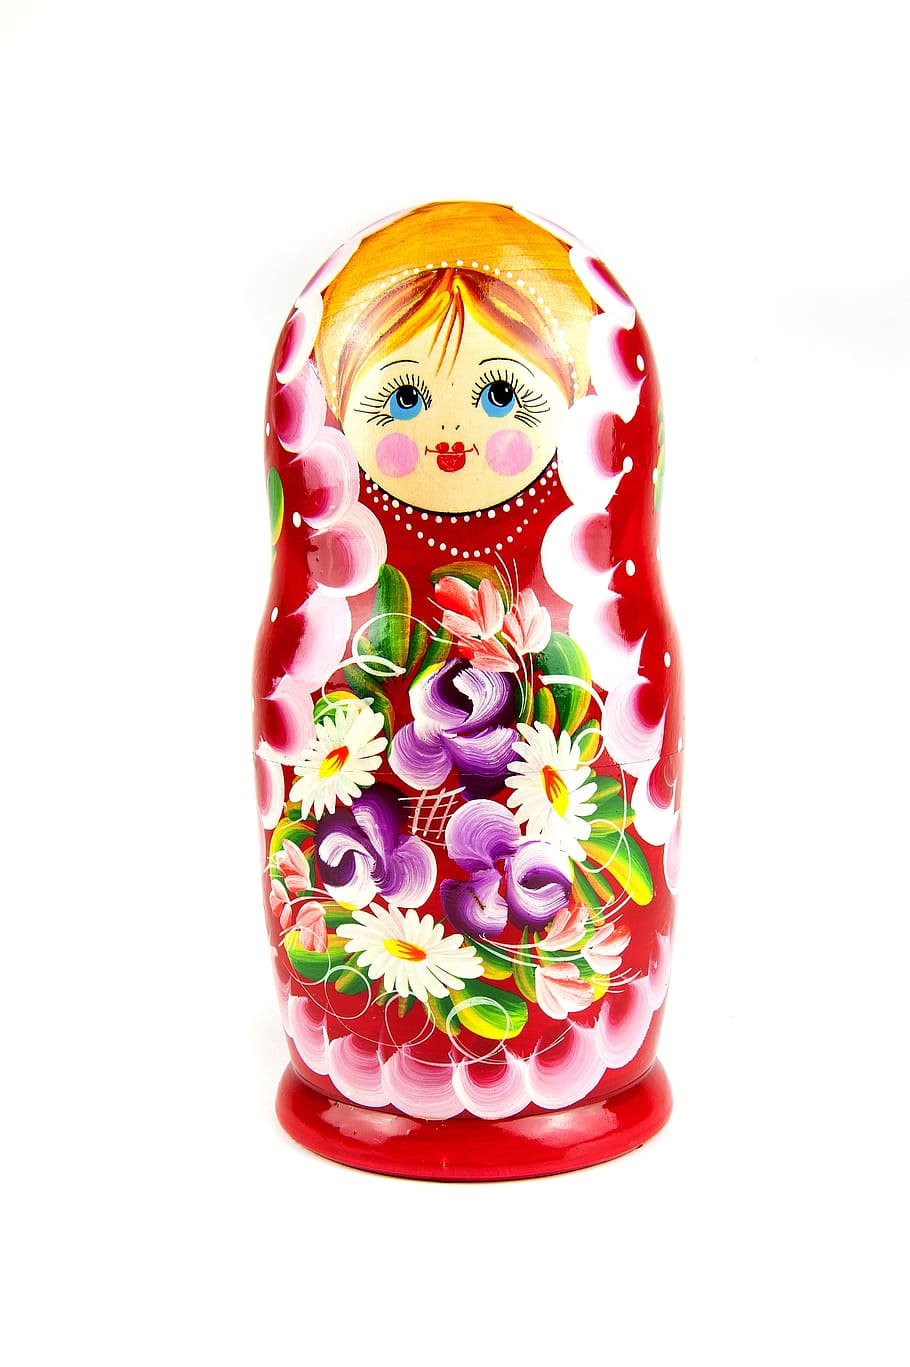 赤の入れ子人形, マトリョーシカ, 木製, 文化, シンボル, レトロ, おもちゃ, ロシア, ロシア語, 典型的なおばあちゃん